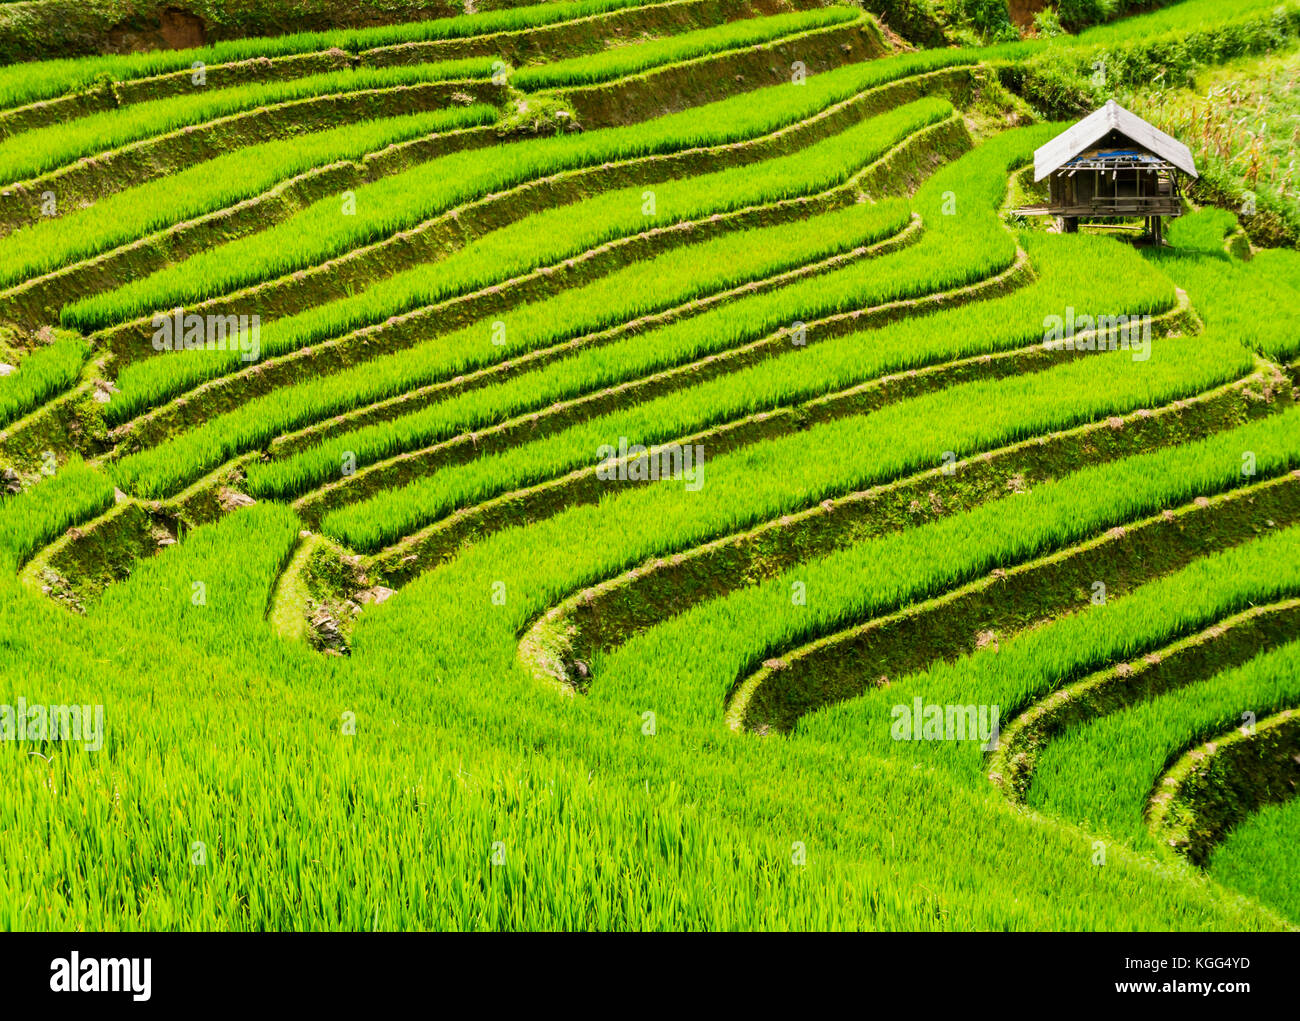 Cabane de ferme entourée de rizières en terrasses, mu cang chai, nord du Vietnam Banque D'Images